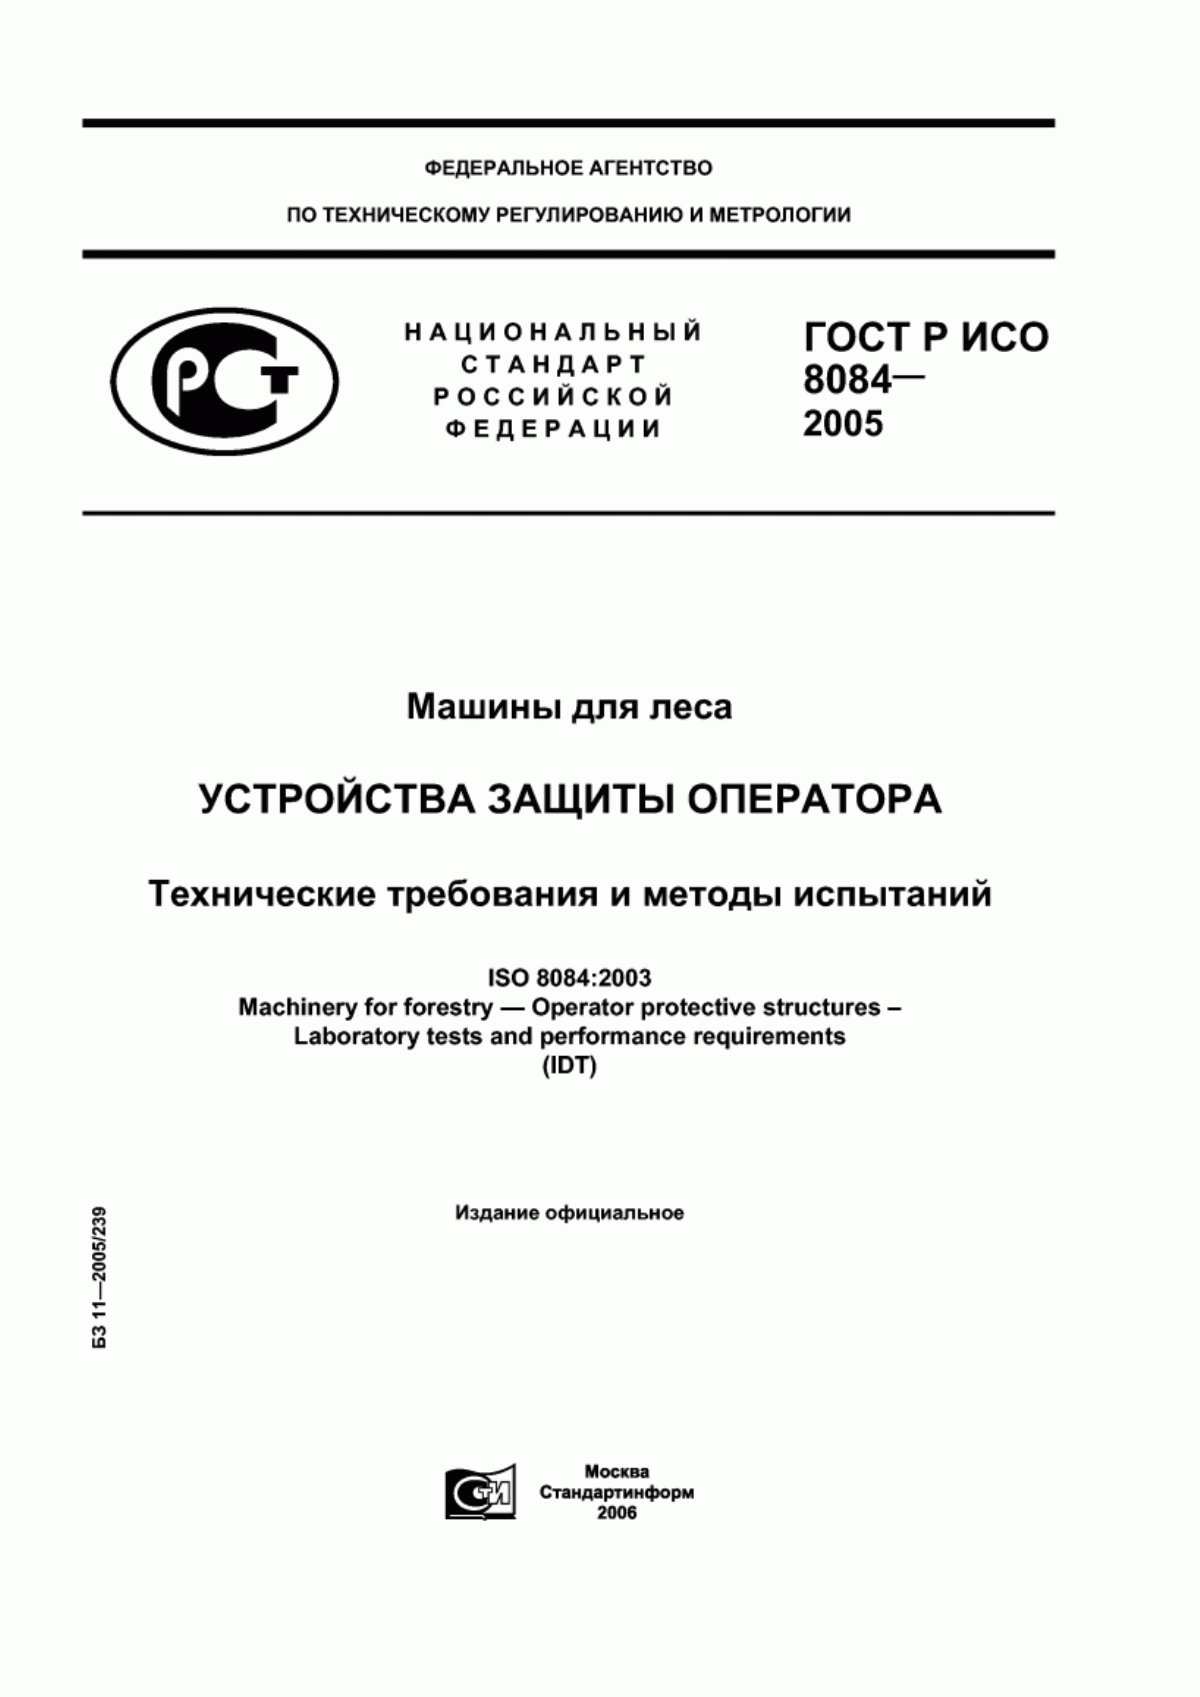 ГОСТ Р ИСО 8084-2005 Машины для леса. Устройства защиты оператора. Технические требования и методы испытаний